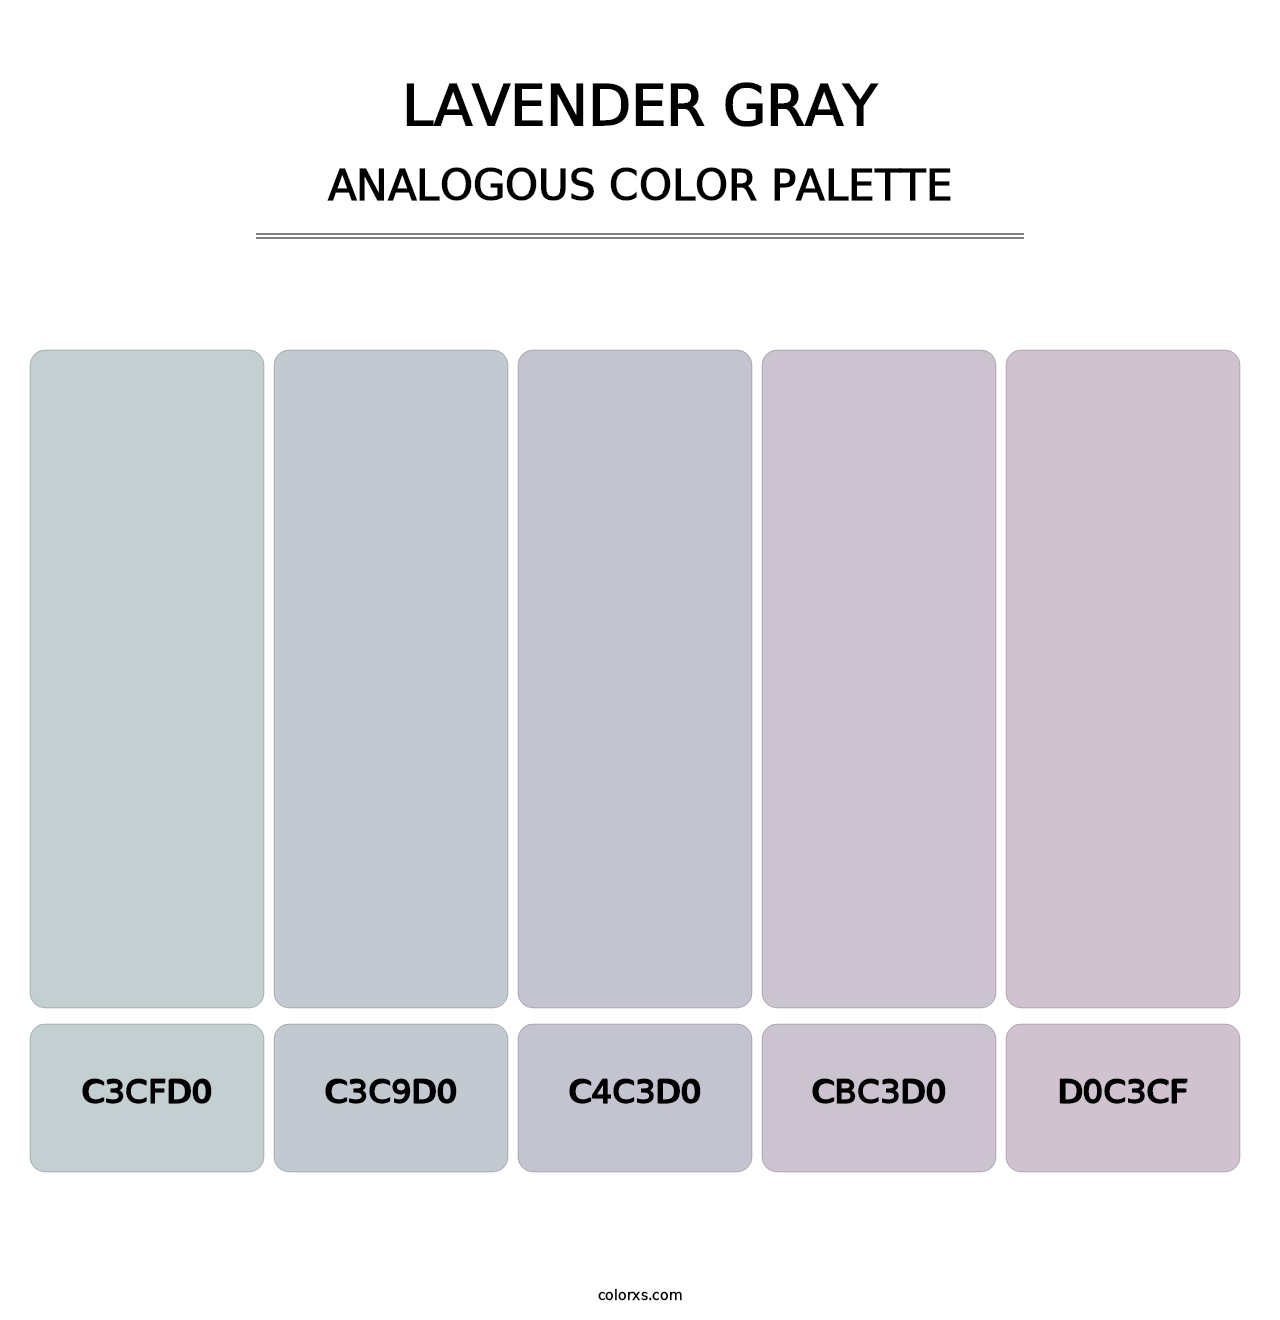 Lavender Gray - Analogous Color Palette